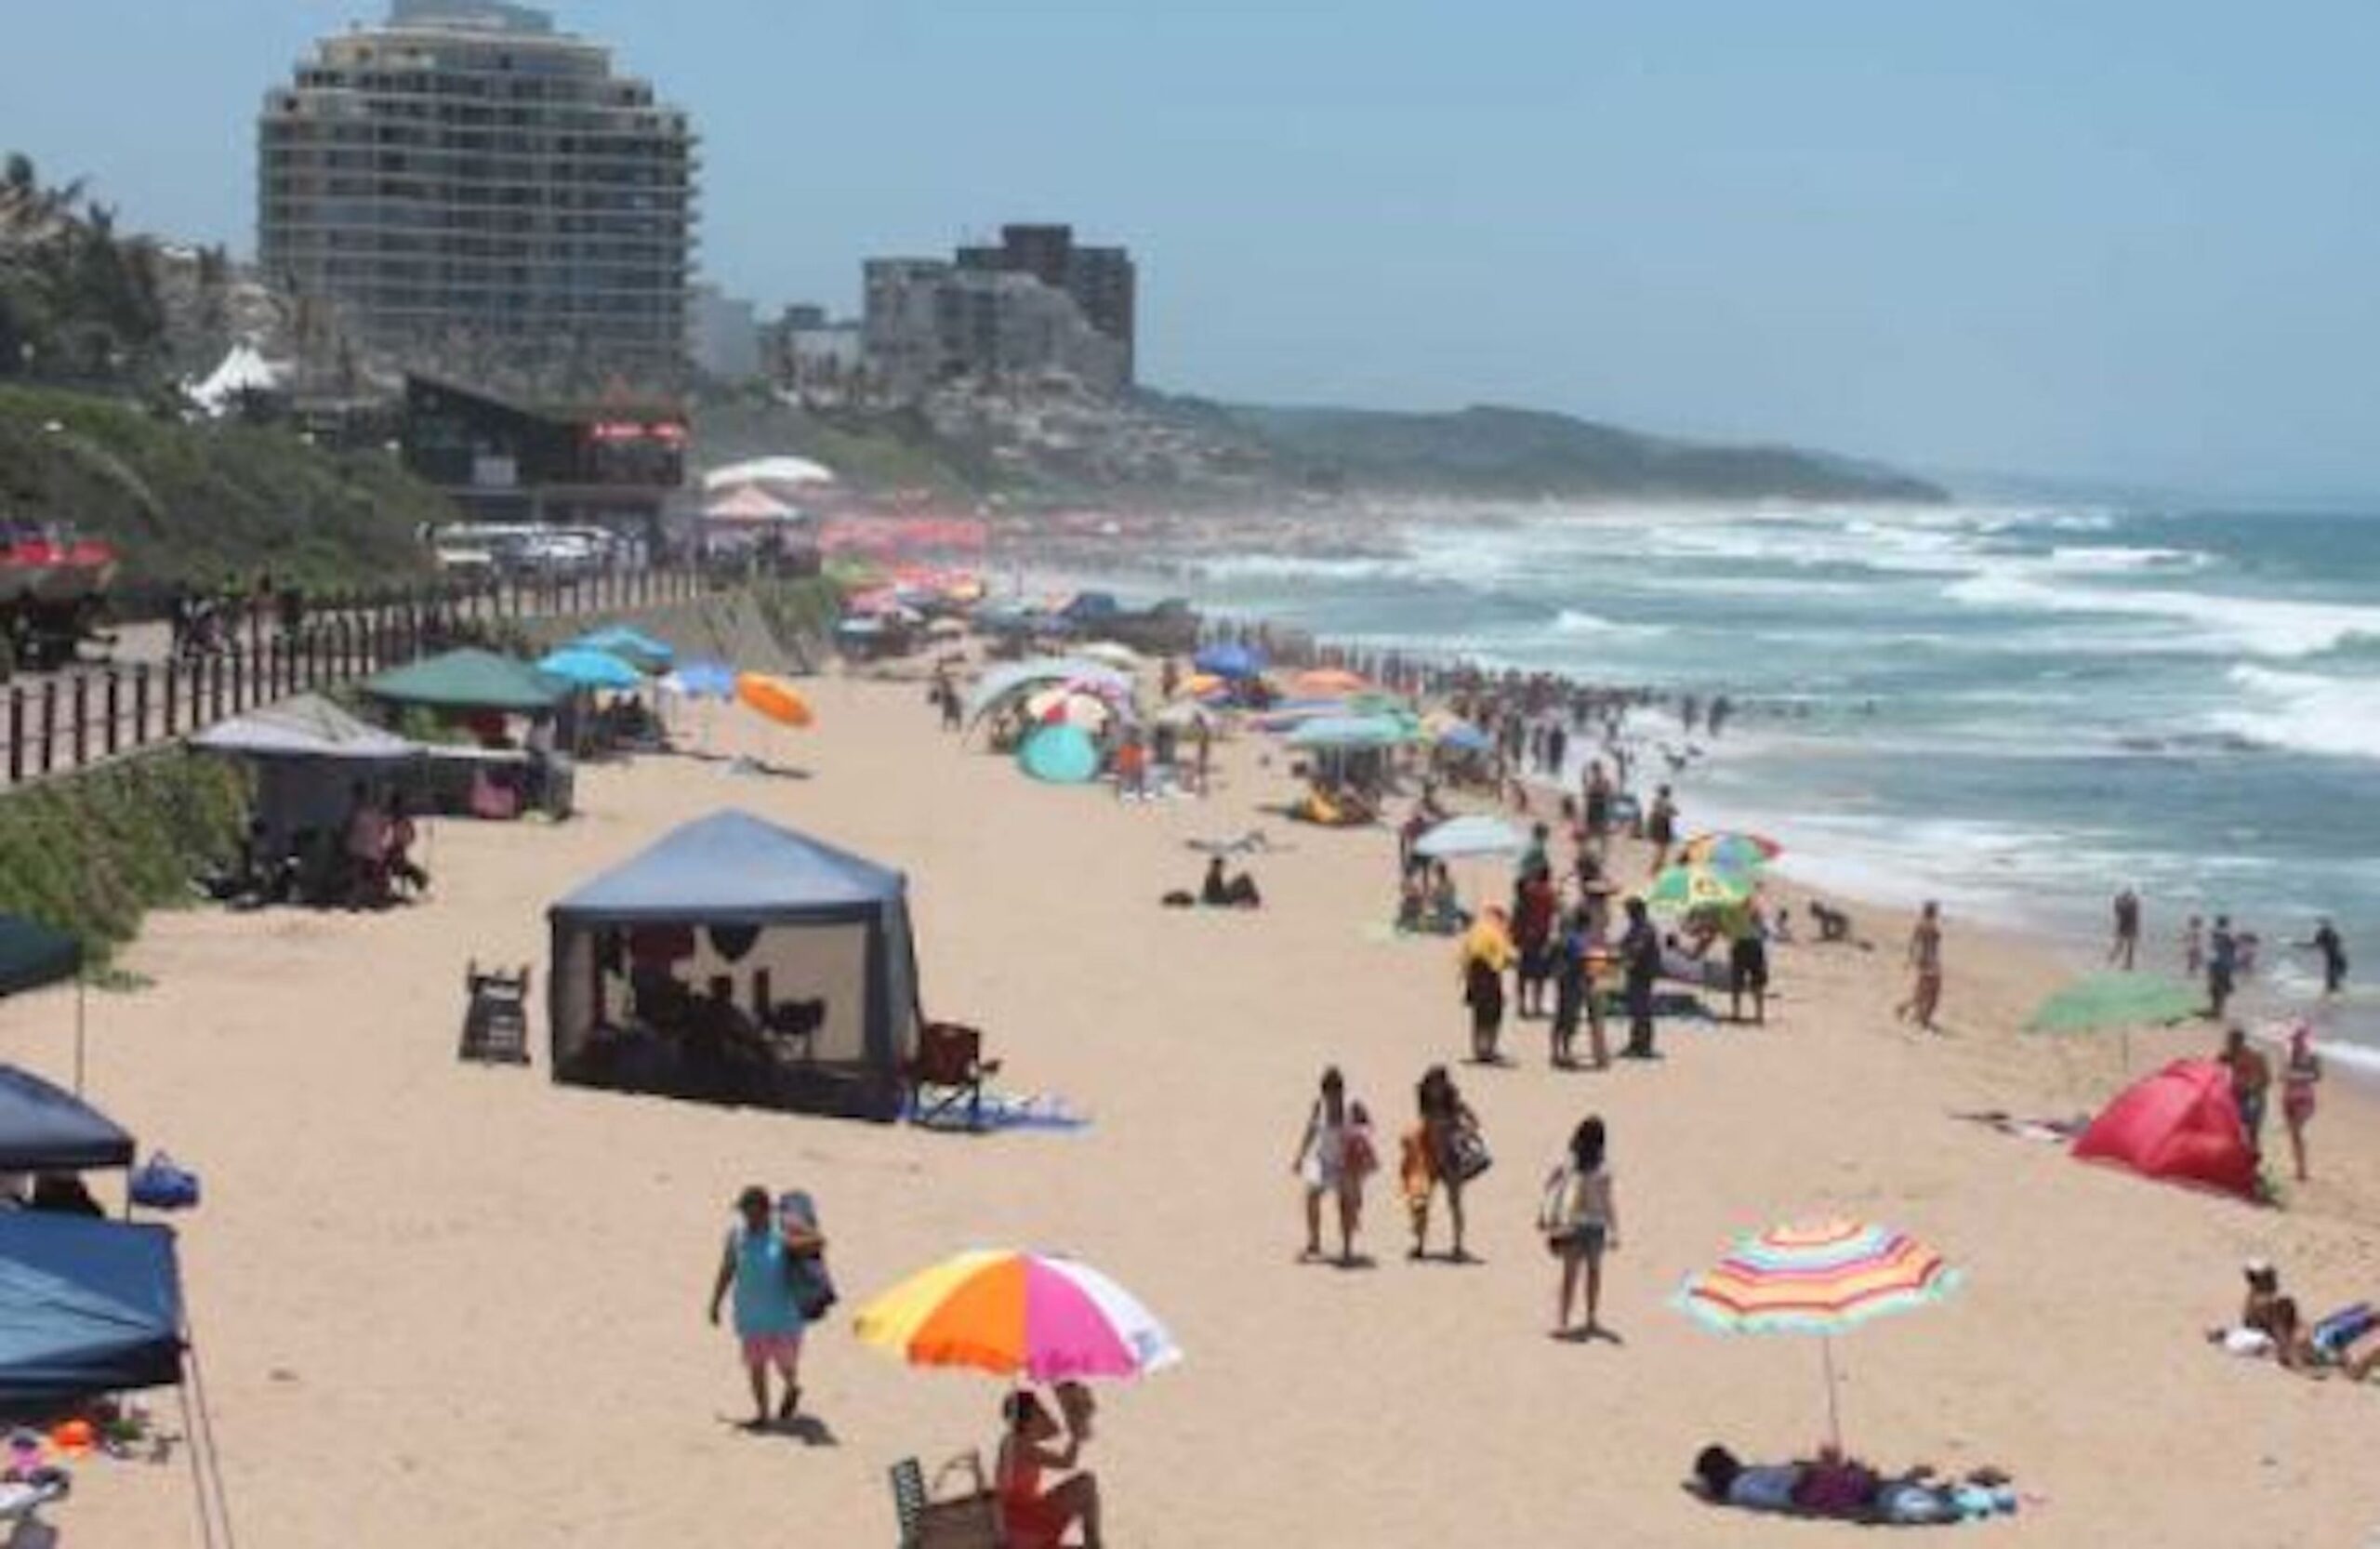 KZN Beaches face closure South Africa Covid